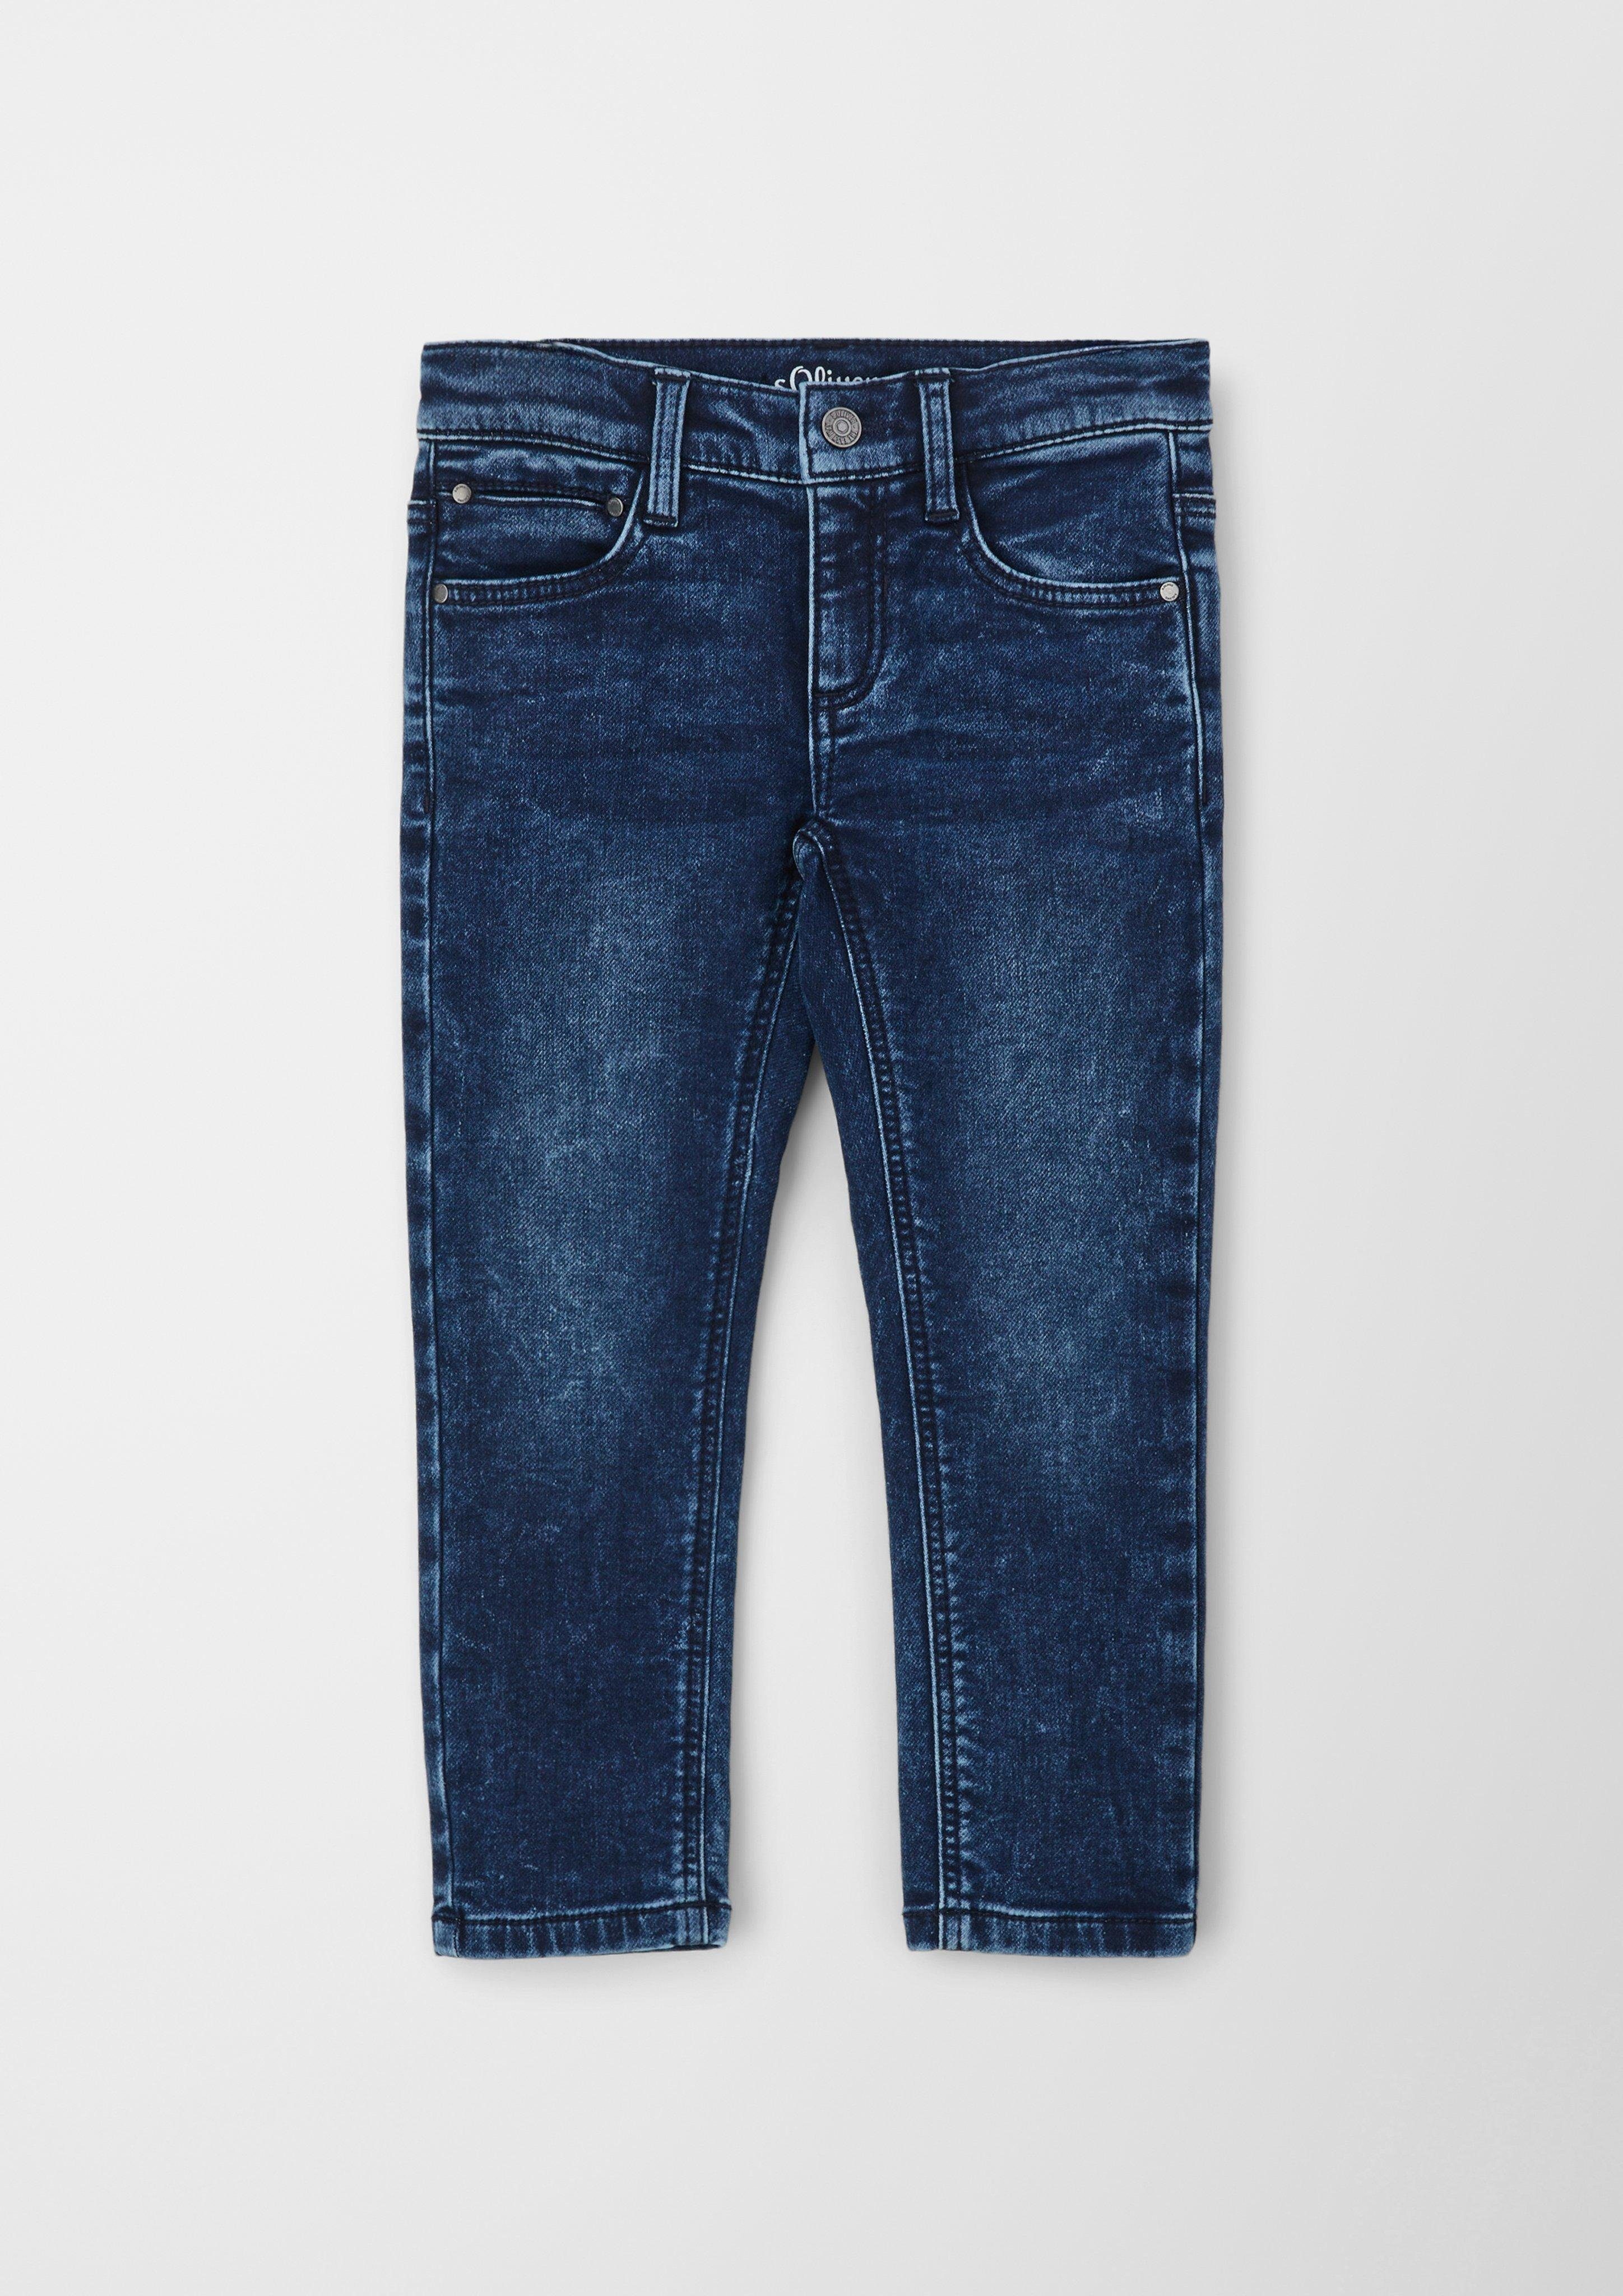 s.Oliver 5-Pocket-Jeans Jeans Brad / Slim Fit / Mid Rise / Slim Leg Waschung, Kontrast-Details